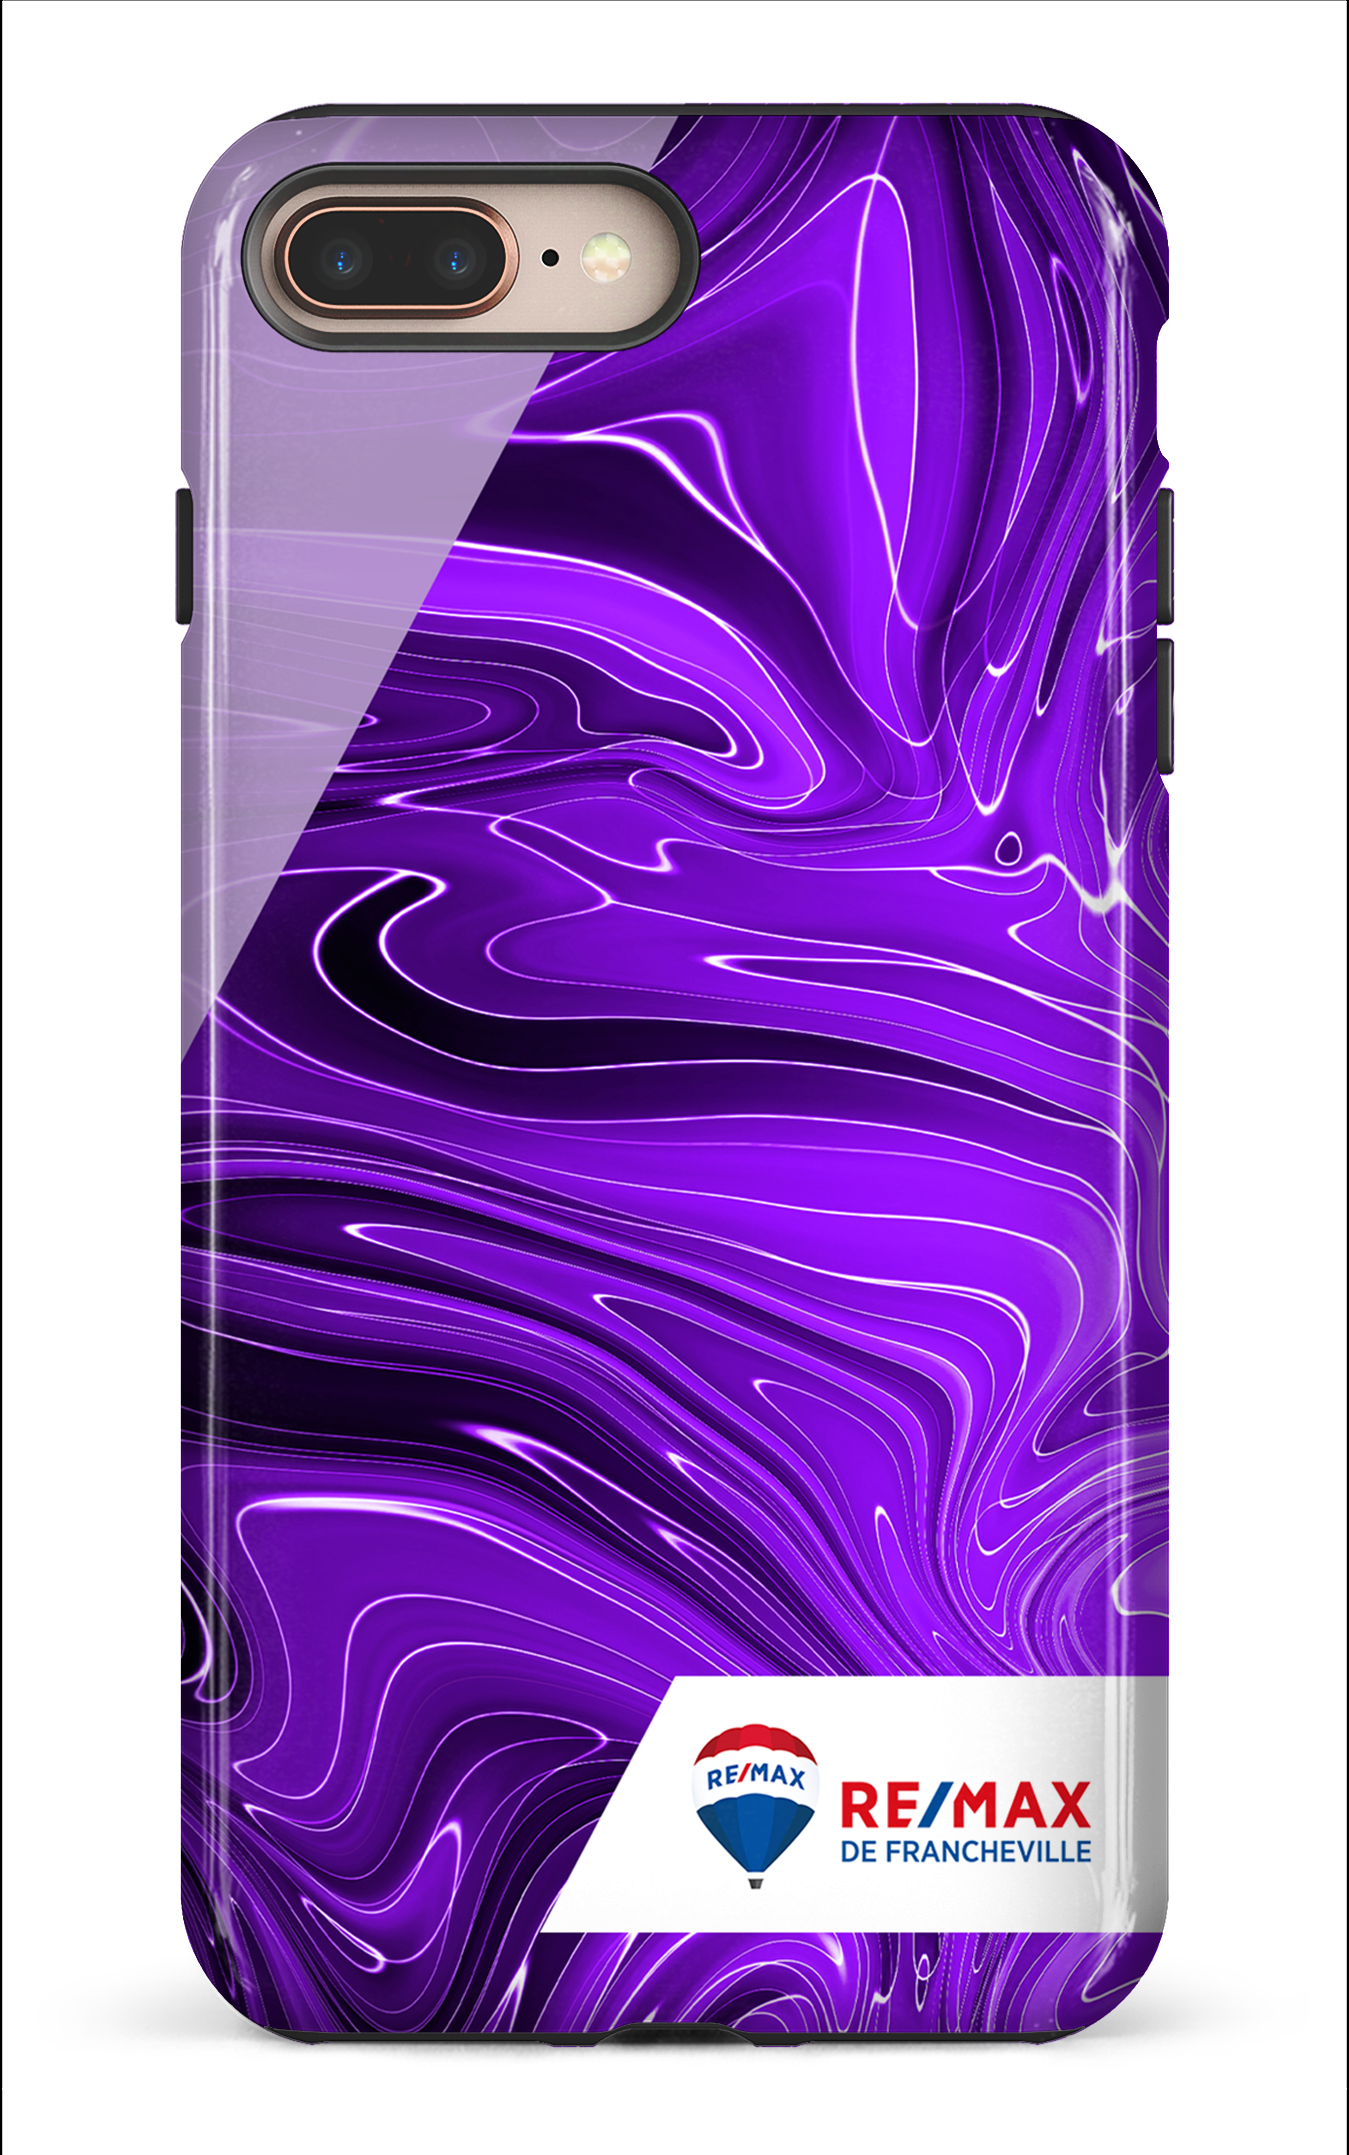 Peinture marbrée sombre violette de Francheville - iPhone 8 Plus